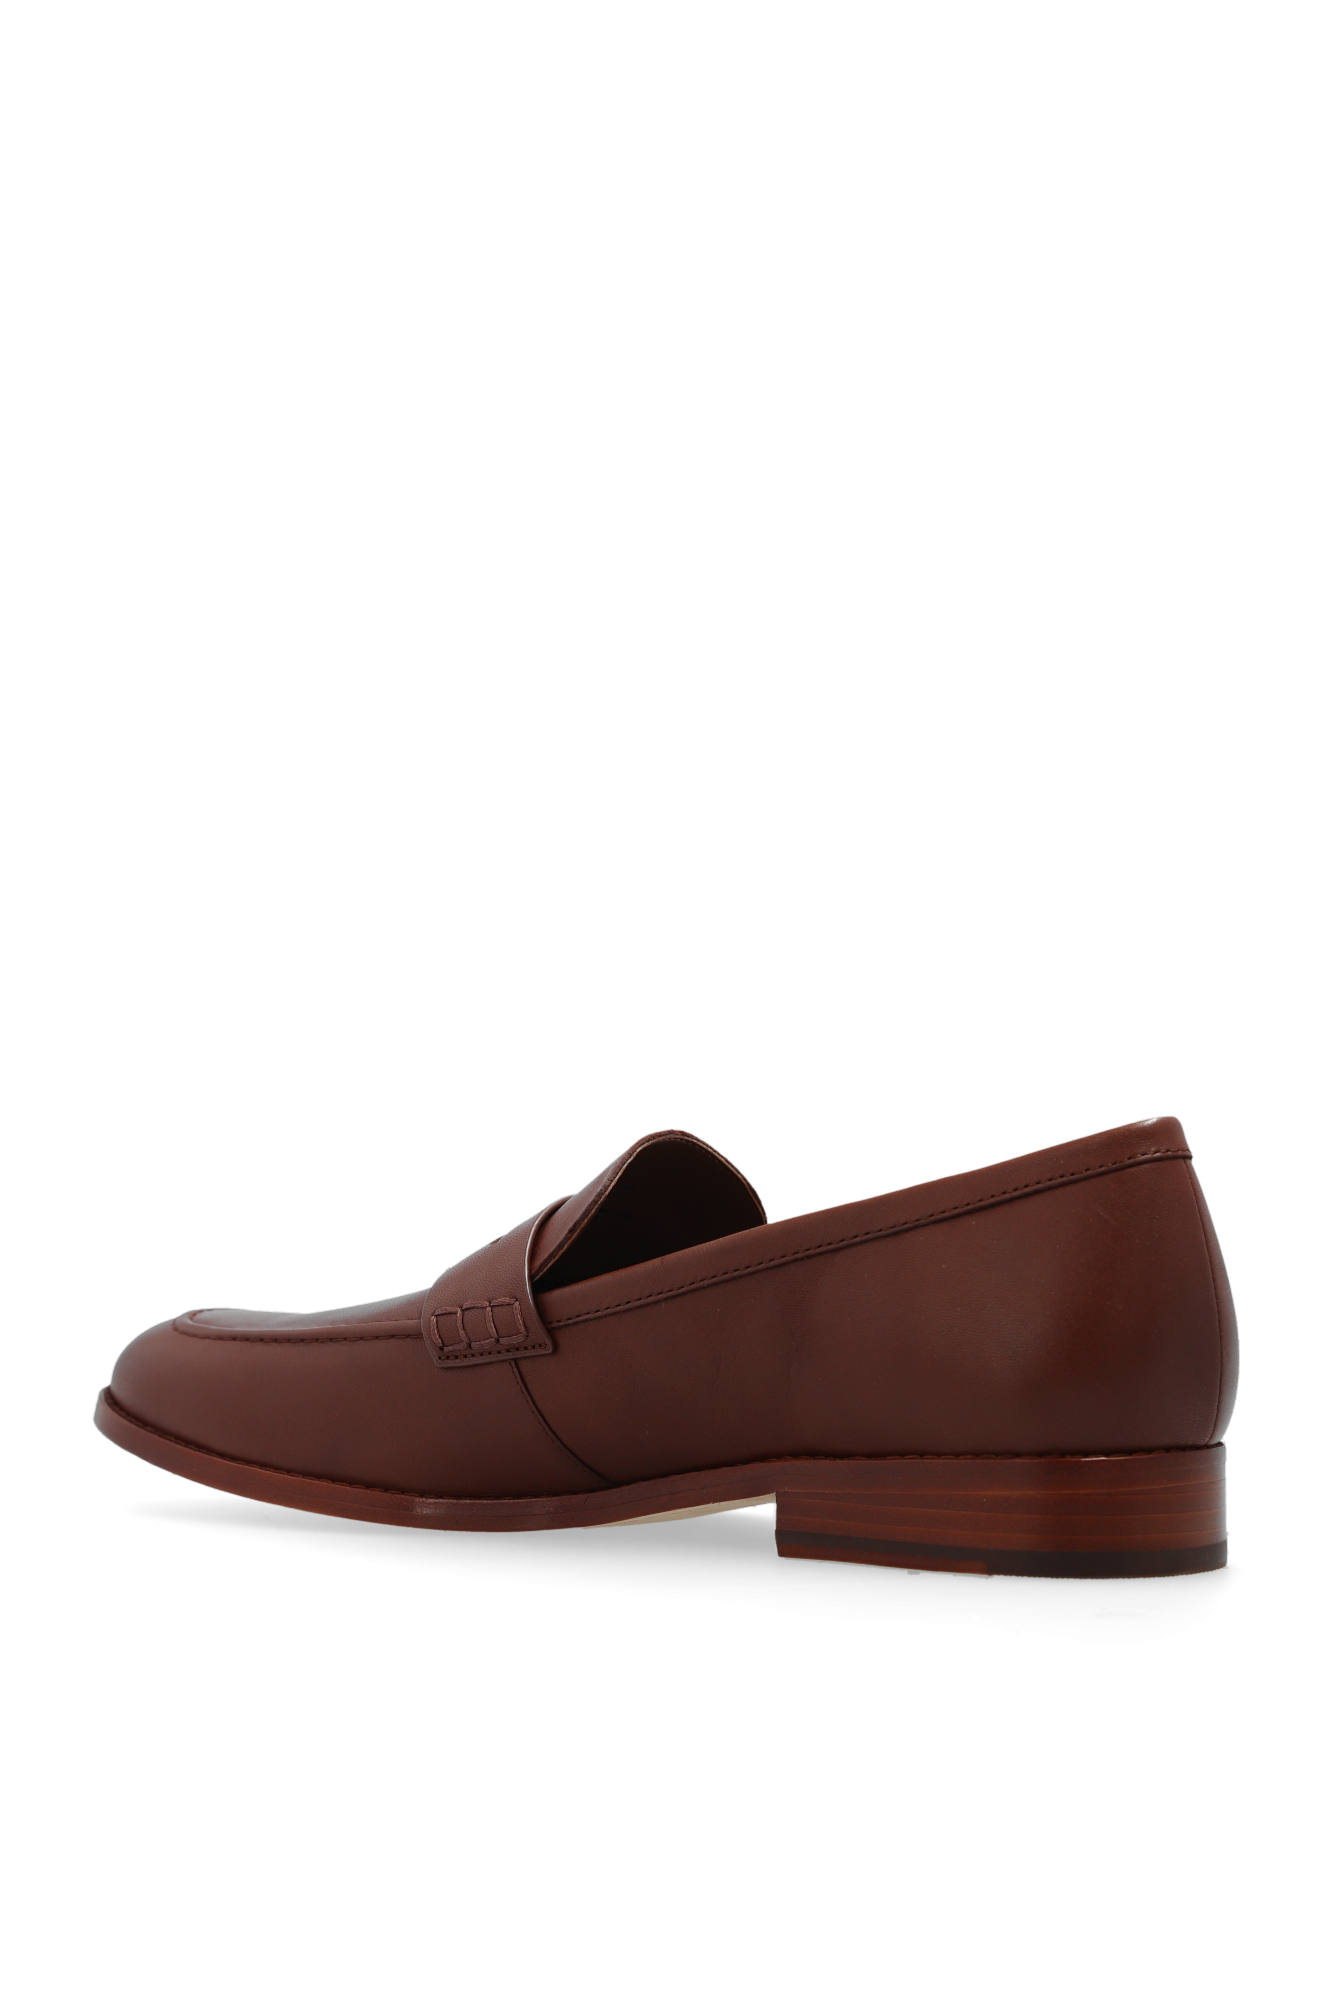 LOUIS VUITTON 7.5 US MEN Mocassin Brown Leather Shoes Penny